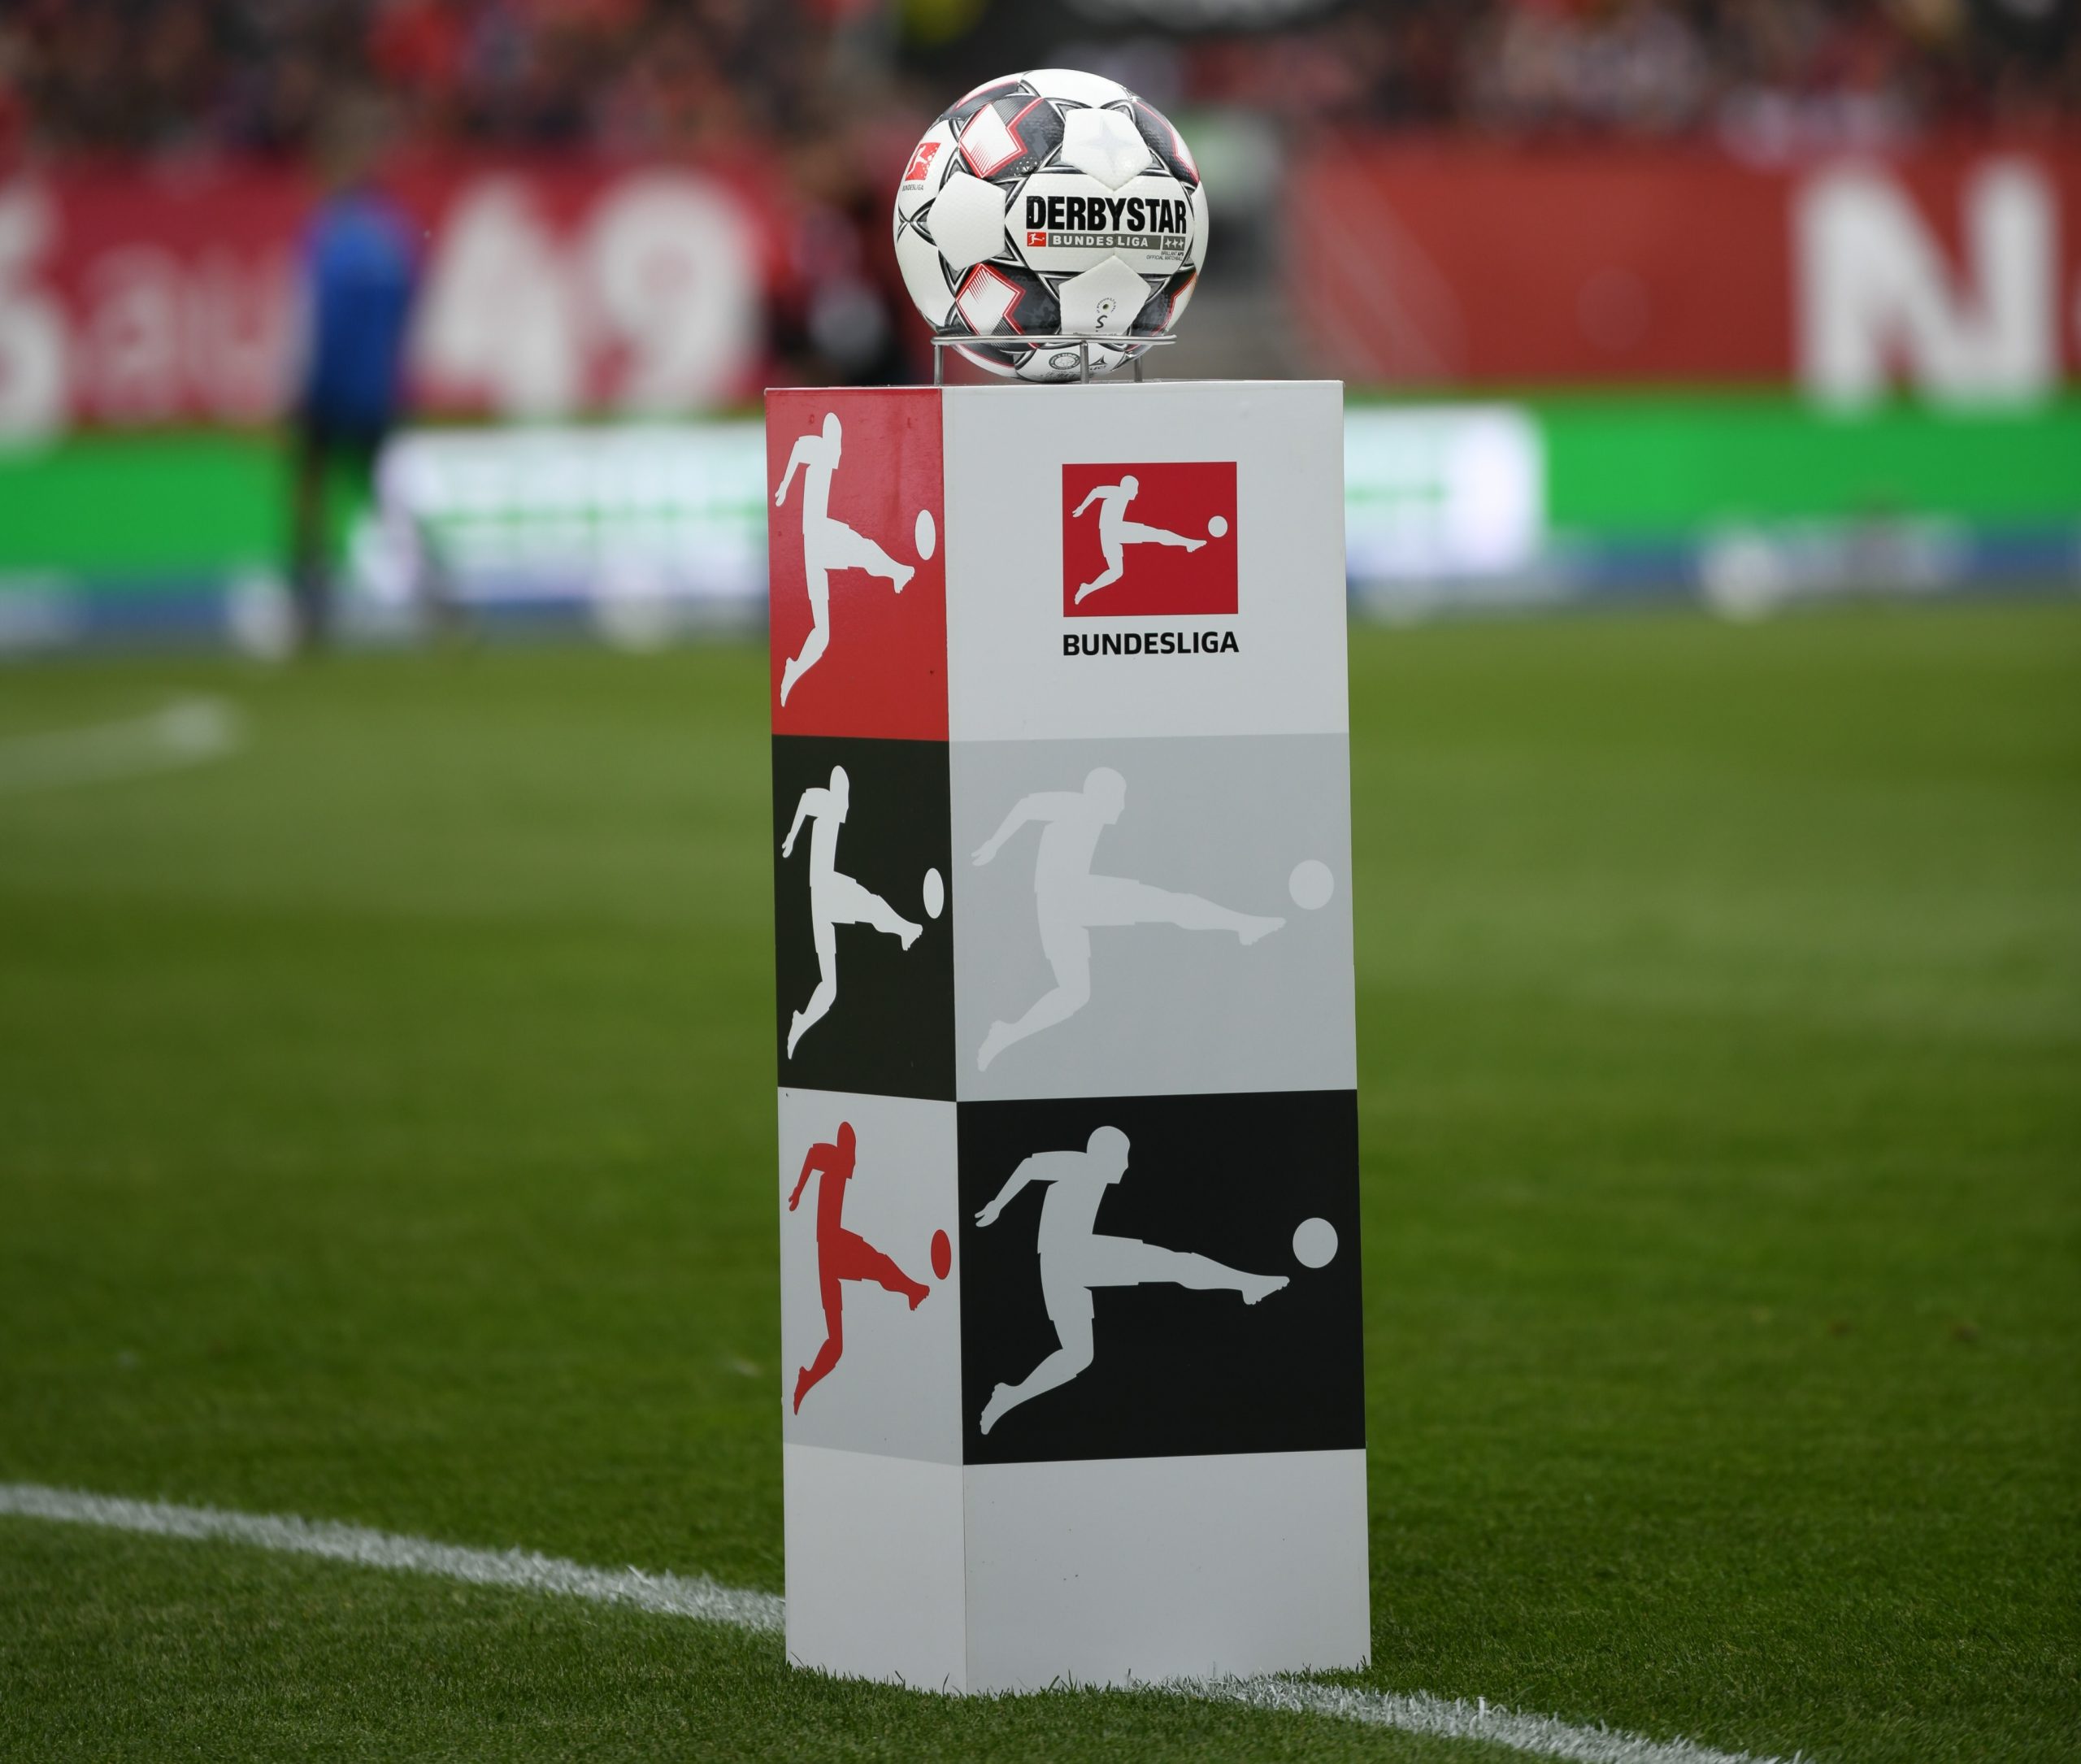 Bundesliga May Resume Soon – Fernandes